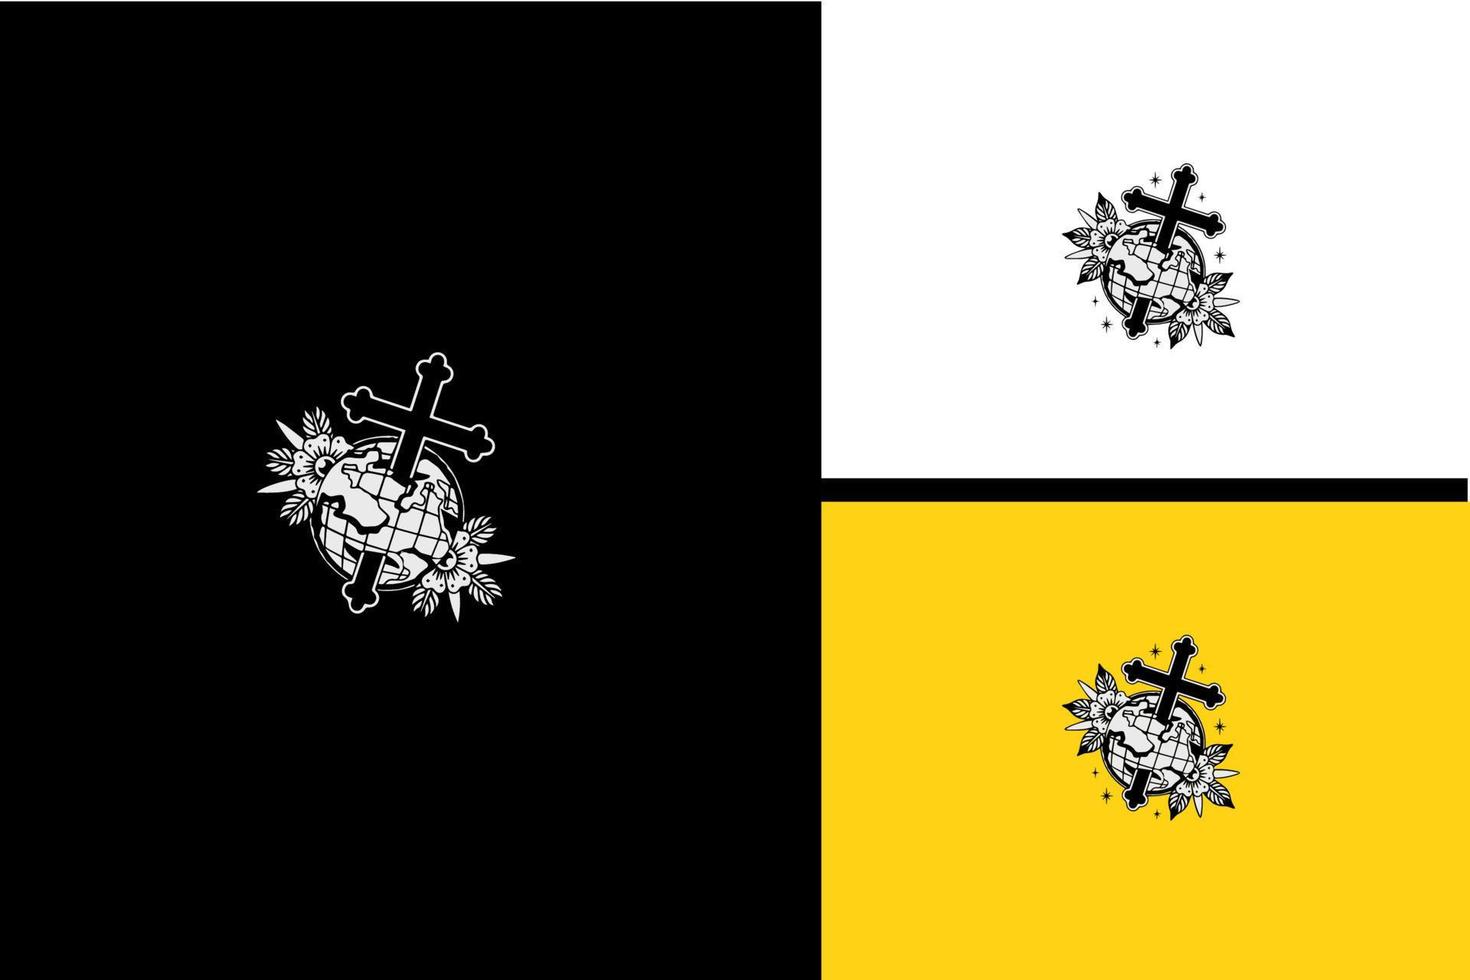 wereldbol en bloemen vector illustratie zwart-wit